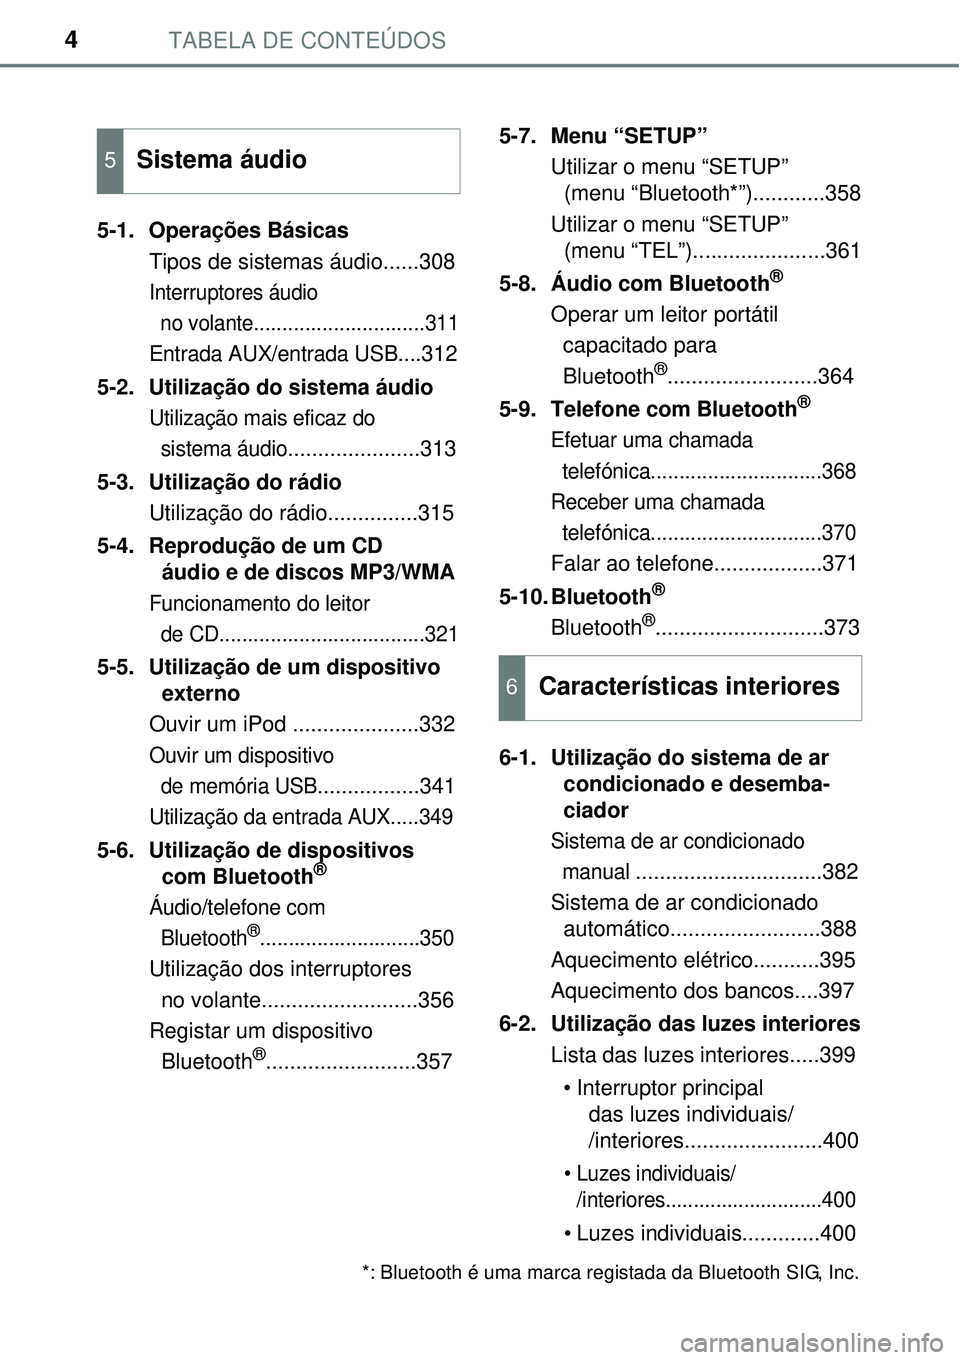 TOYOTA AVENSIS 2015  Manual de utilização (in Portuguese) TABELA DE CONTEÚDOS4
5-1. Operações Básicas
Tipos de sistemas áudio......308
Interruptores áudio 
  no volante
..............................311
Entrada AUX/entrada USB....312
5-2. Utilização 